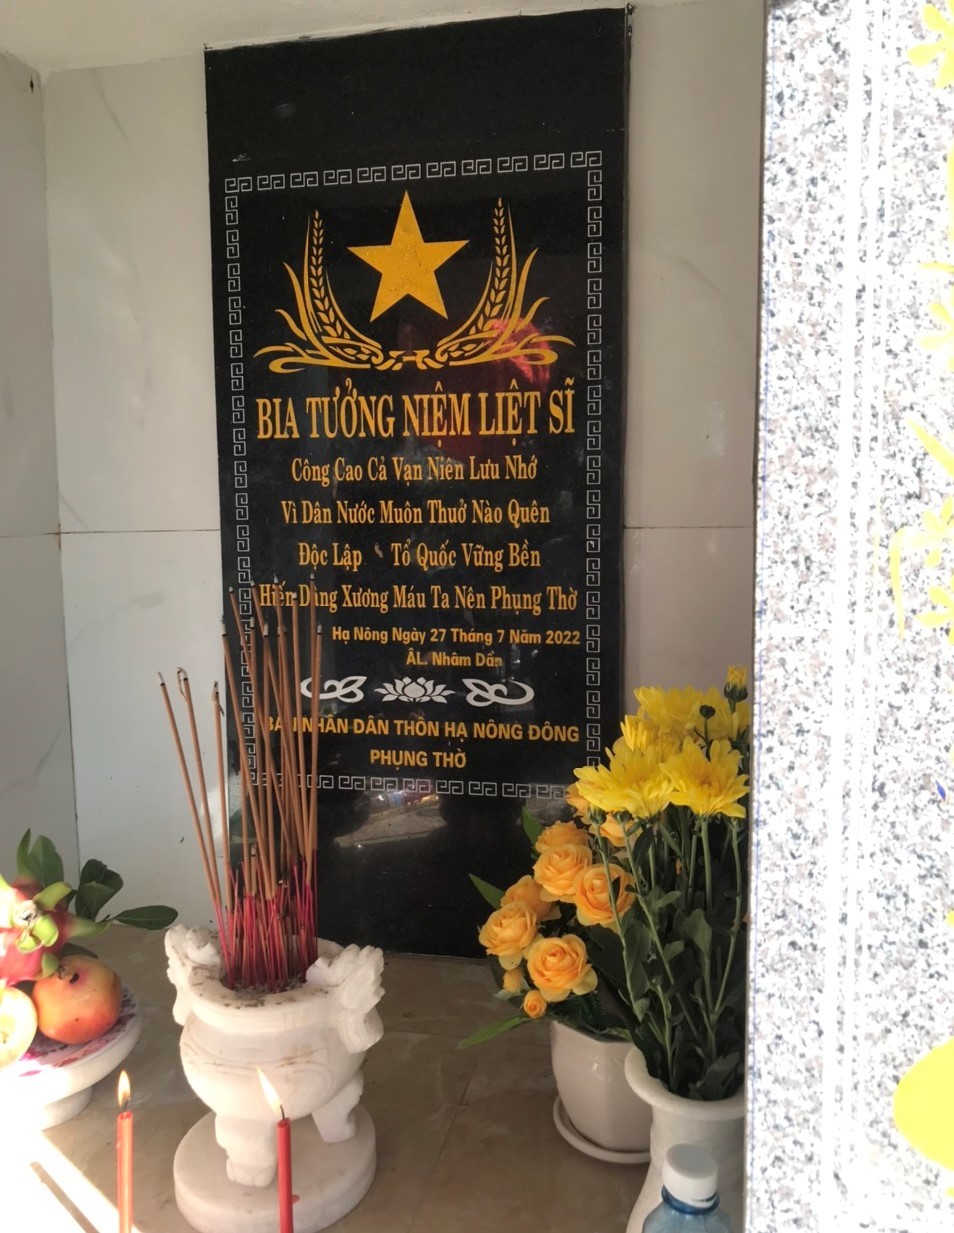  Bia tưởng niệm các Liệt sỹ tại Đình làng Hạ Nông